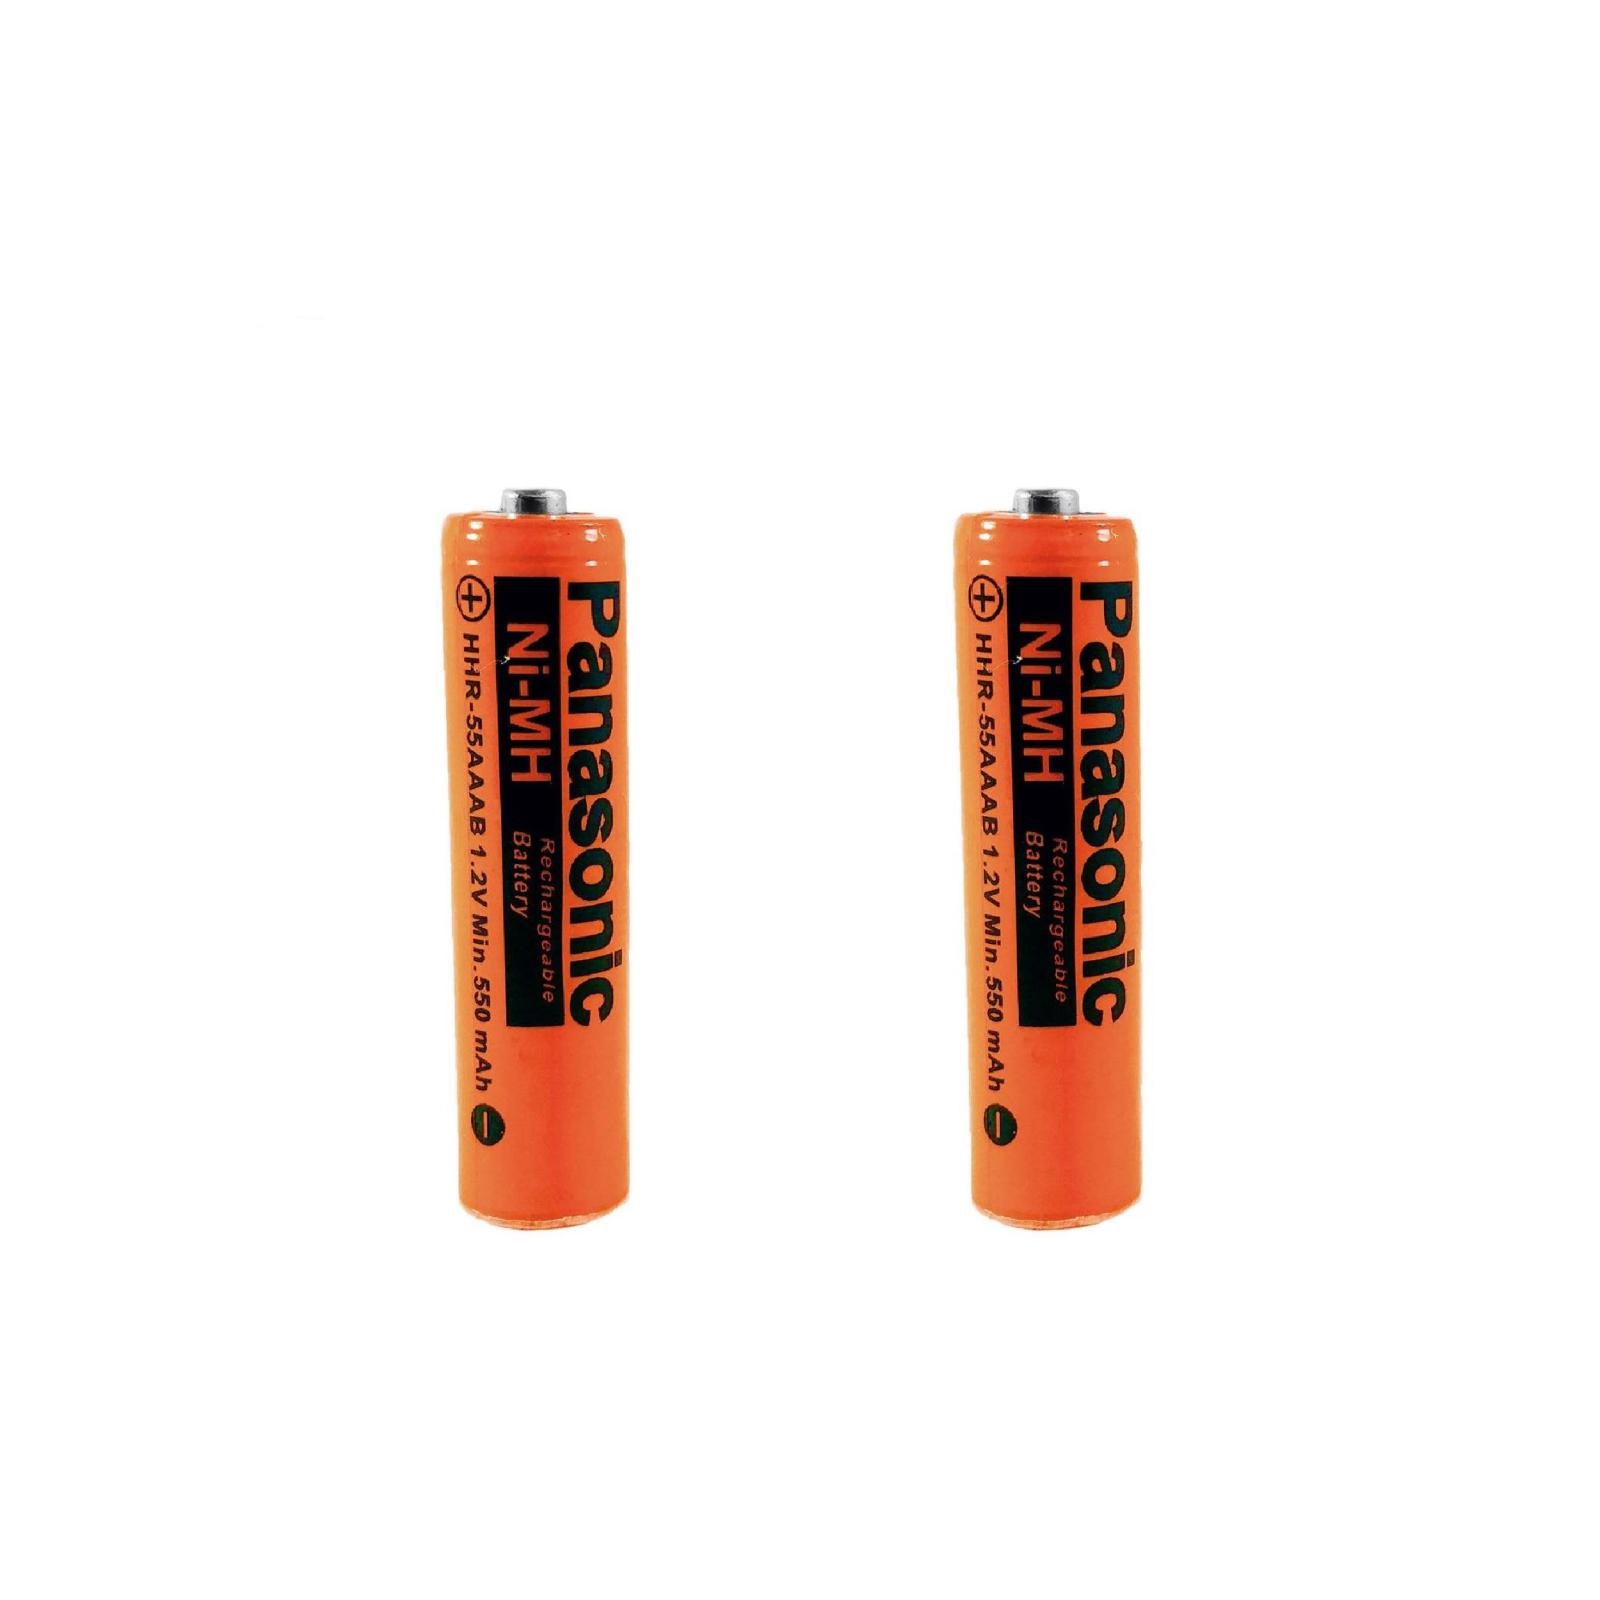 باتری نیم قلمی قابل شارژ پاناسونیک مدل HHR-550 بسته 2 عددی